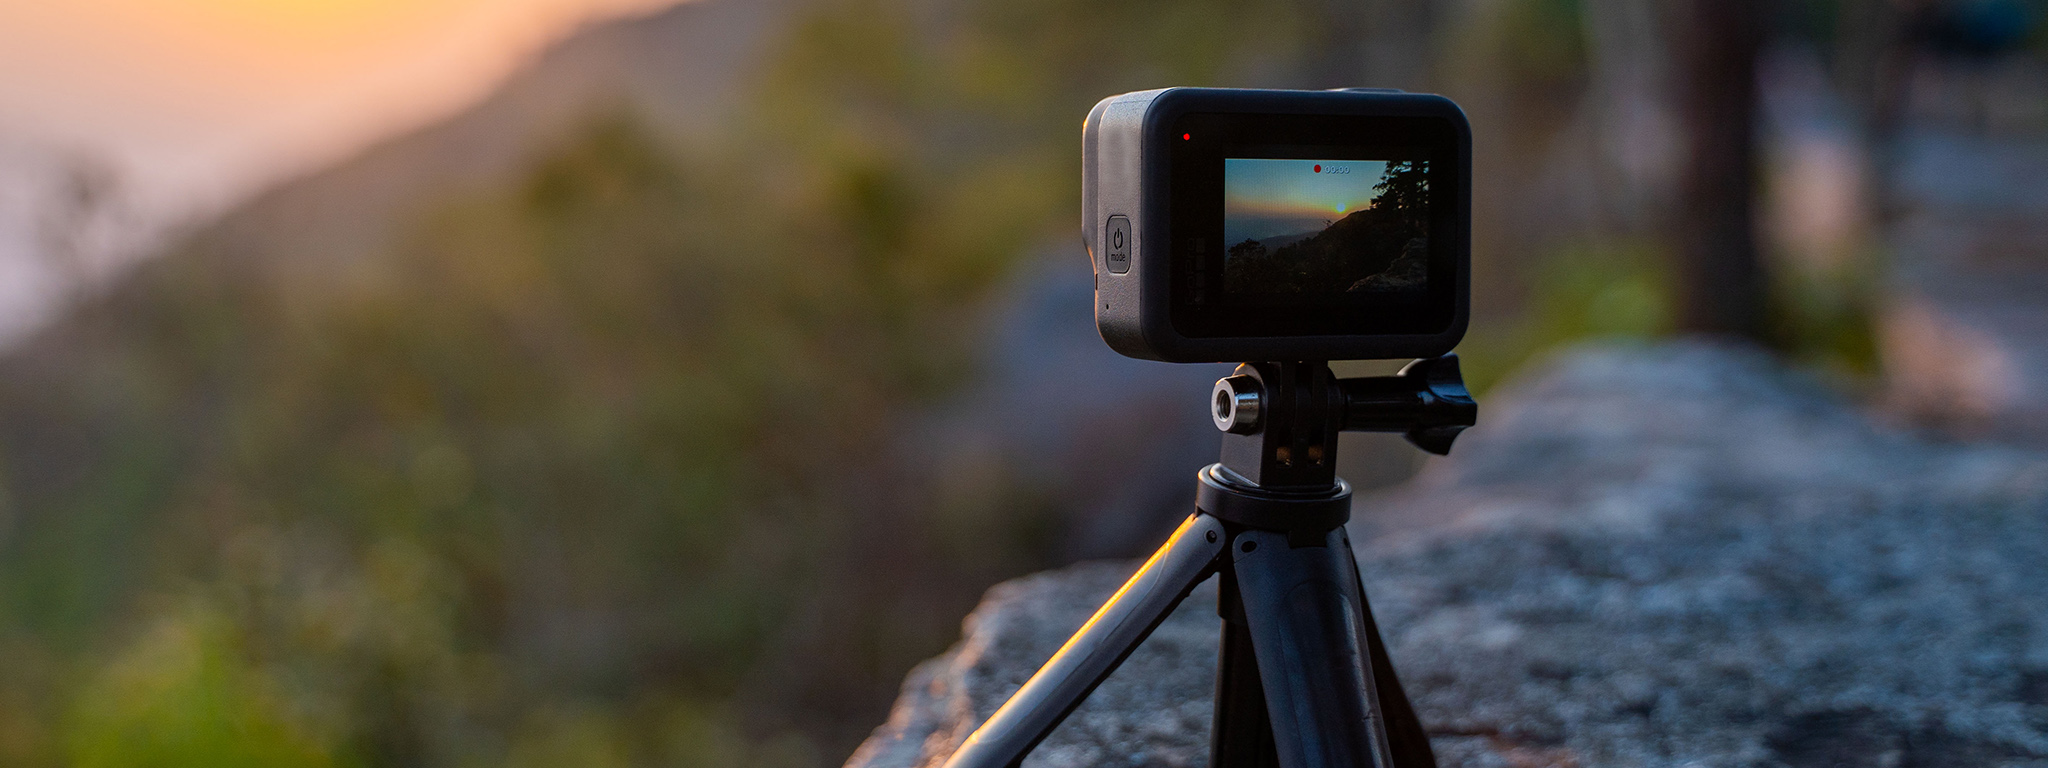 การบันทึกภาพพระอาทิตย์ตกผ่านกล้อง GoPro แบบ Time-Lapse